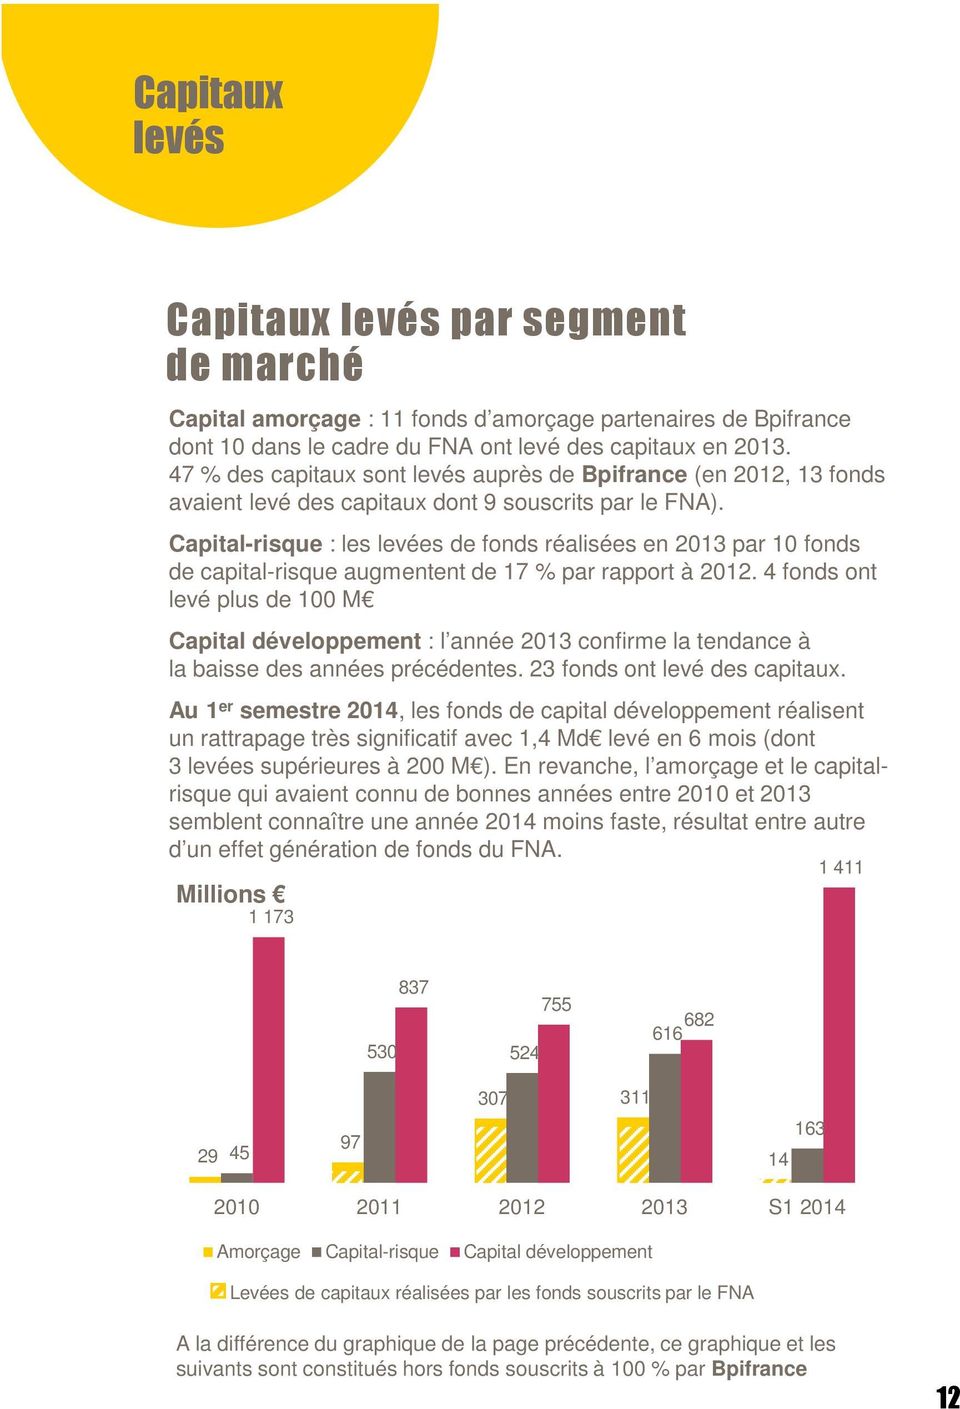 Capital-risque : les levées de fonds réalisées en 2013 par 10 fonds de capital-risque augmentent de 17 % par rapport à 2012.